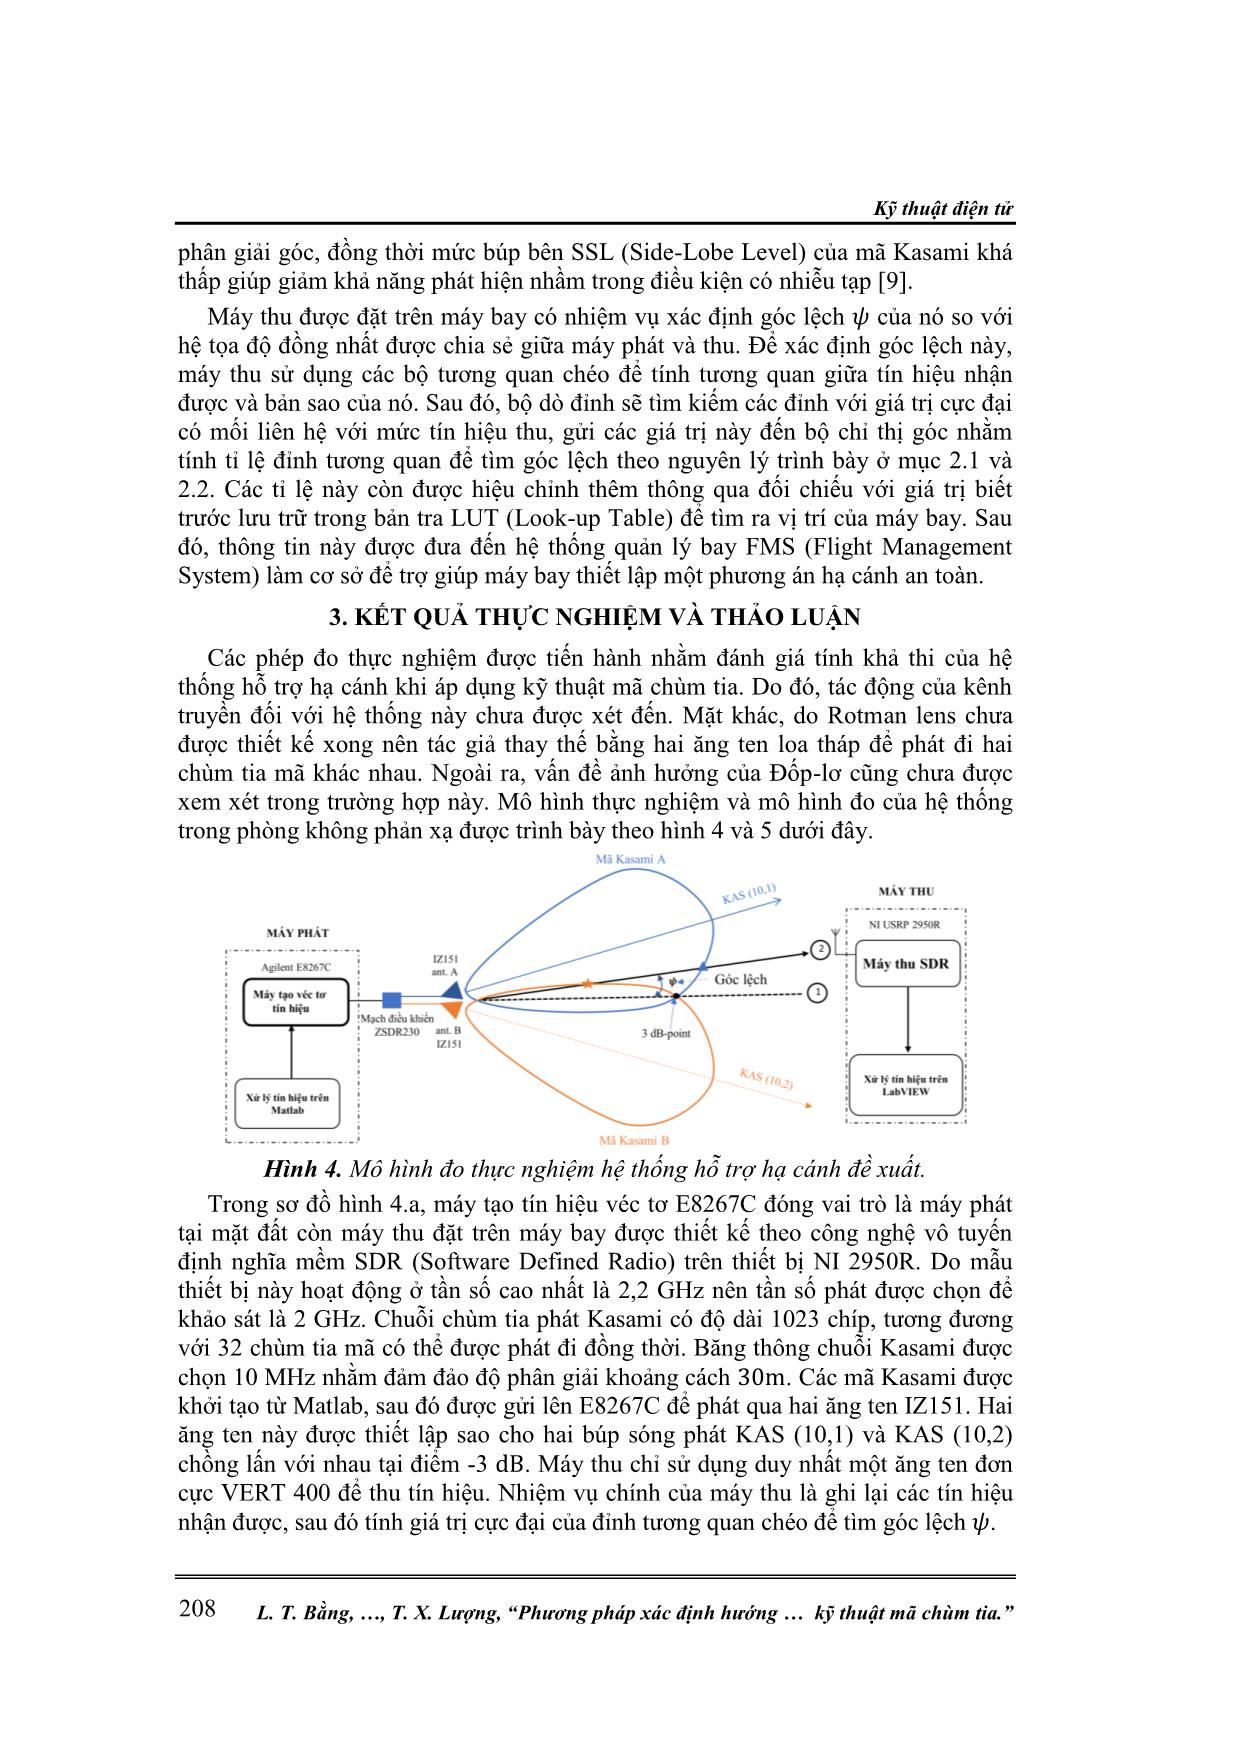 Phương pháp xác định hướng của máy bay sử dụng kỹ thuật mã chùm tia trang 5